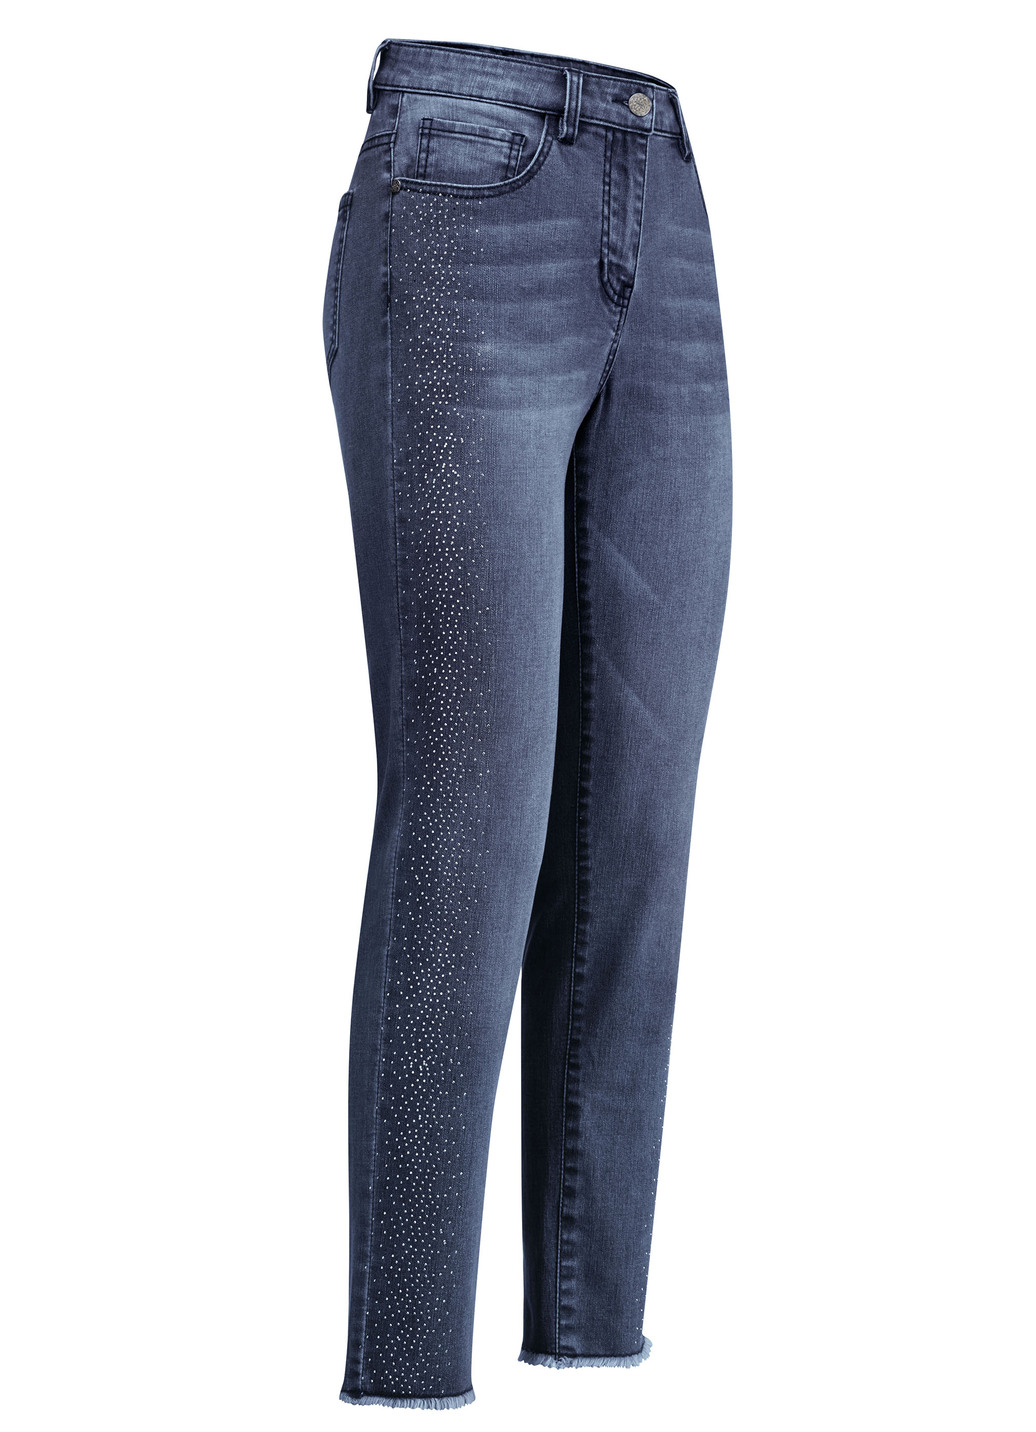 Edel-Jeans mit tollen Glitzersteinchen und Fransensaum, Dunkelblau, Größe 42 von BADER